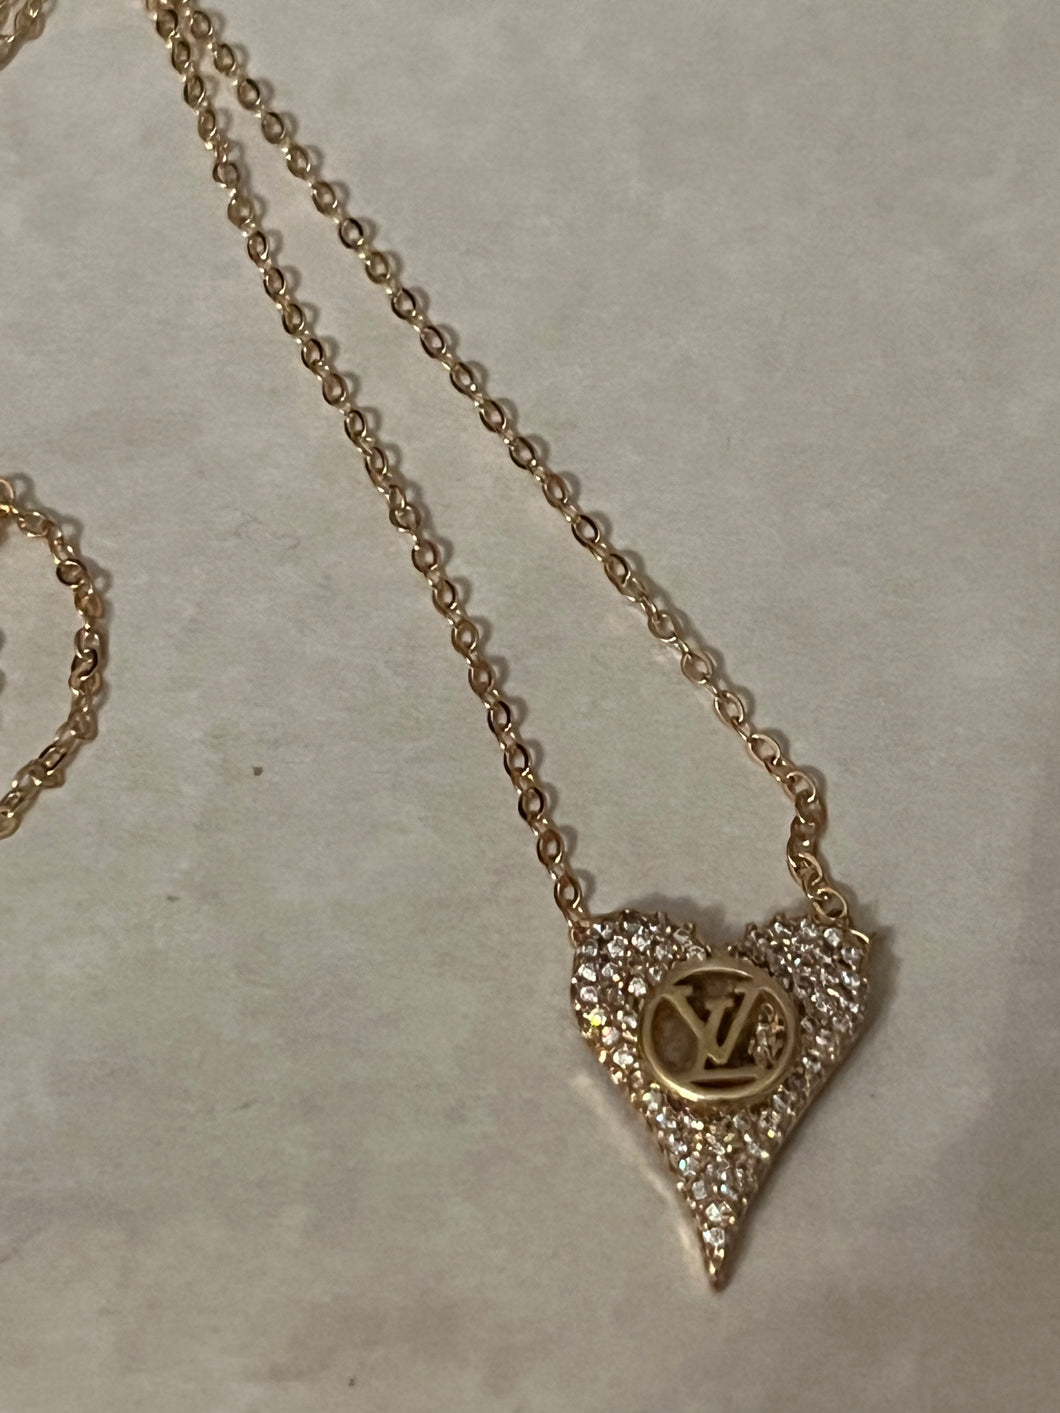 Repurposed Small Heart Ava Necklace